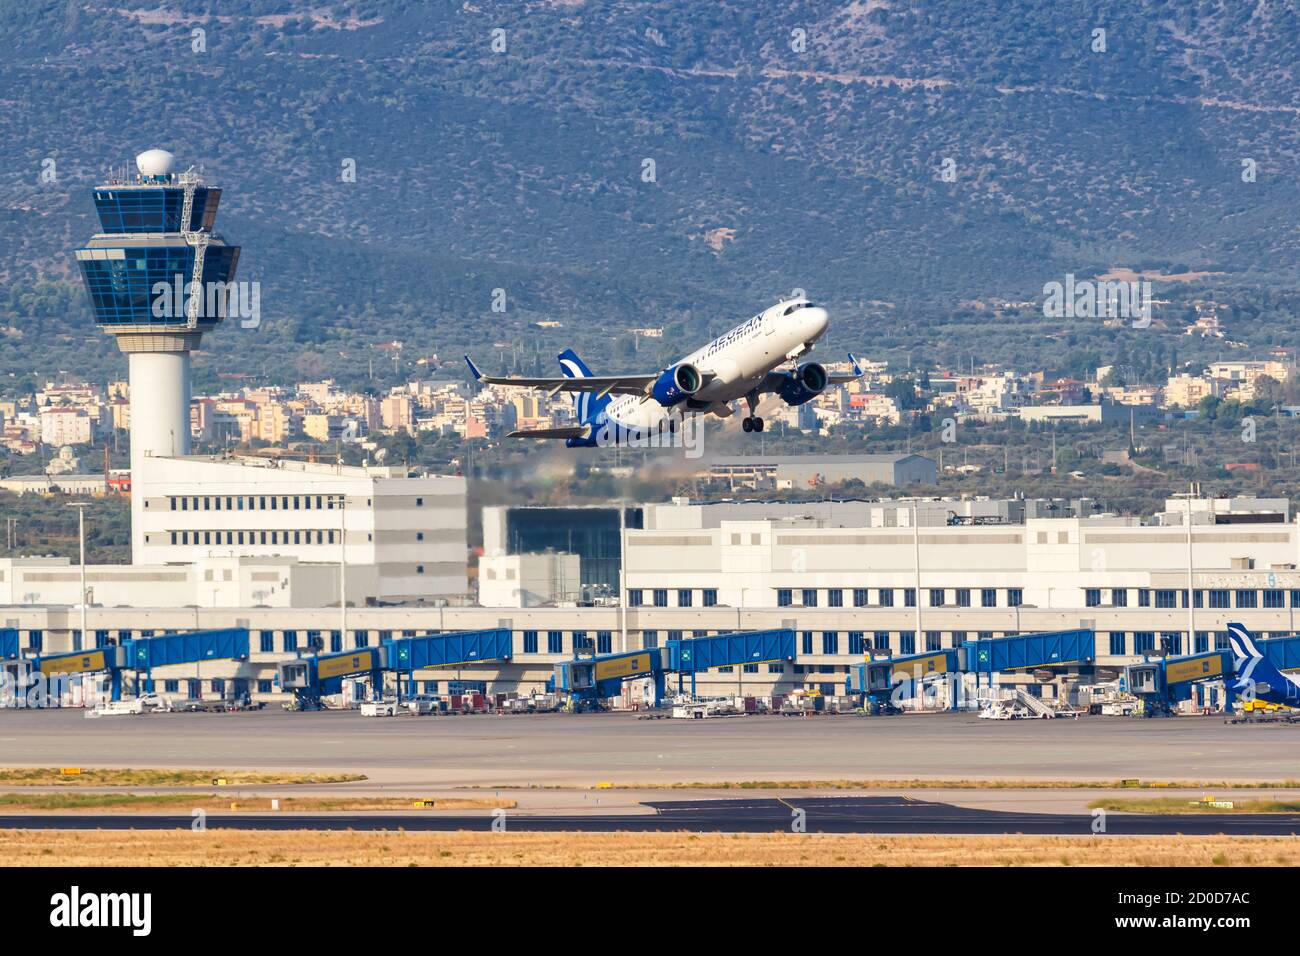 Atene, Grecia - 22 settembre 2020: Aegean Airlines Airbus A320neo aereo all'aeroporto di Atene in Grecia. Airbus è un produttore europeo di aeromobili b Foto Stock